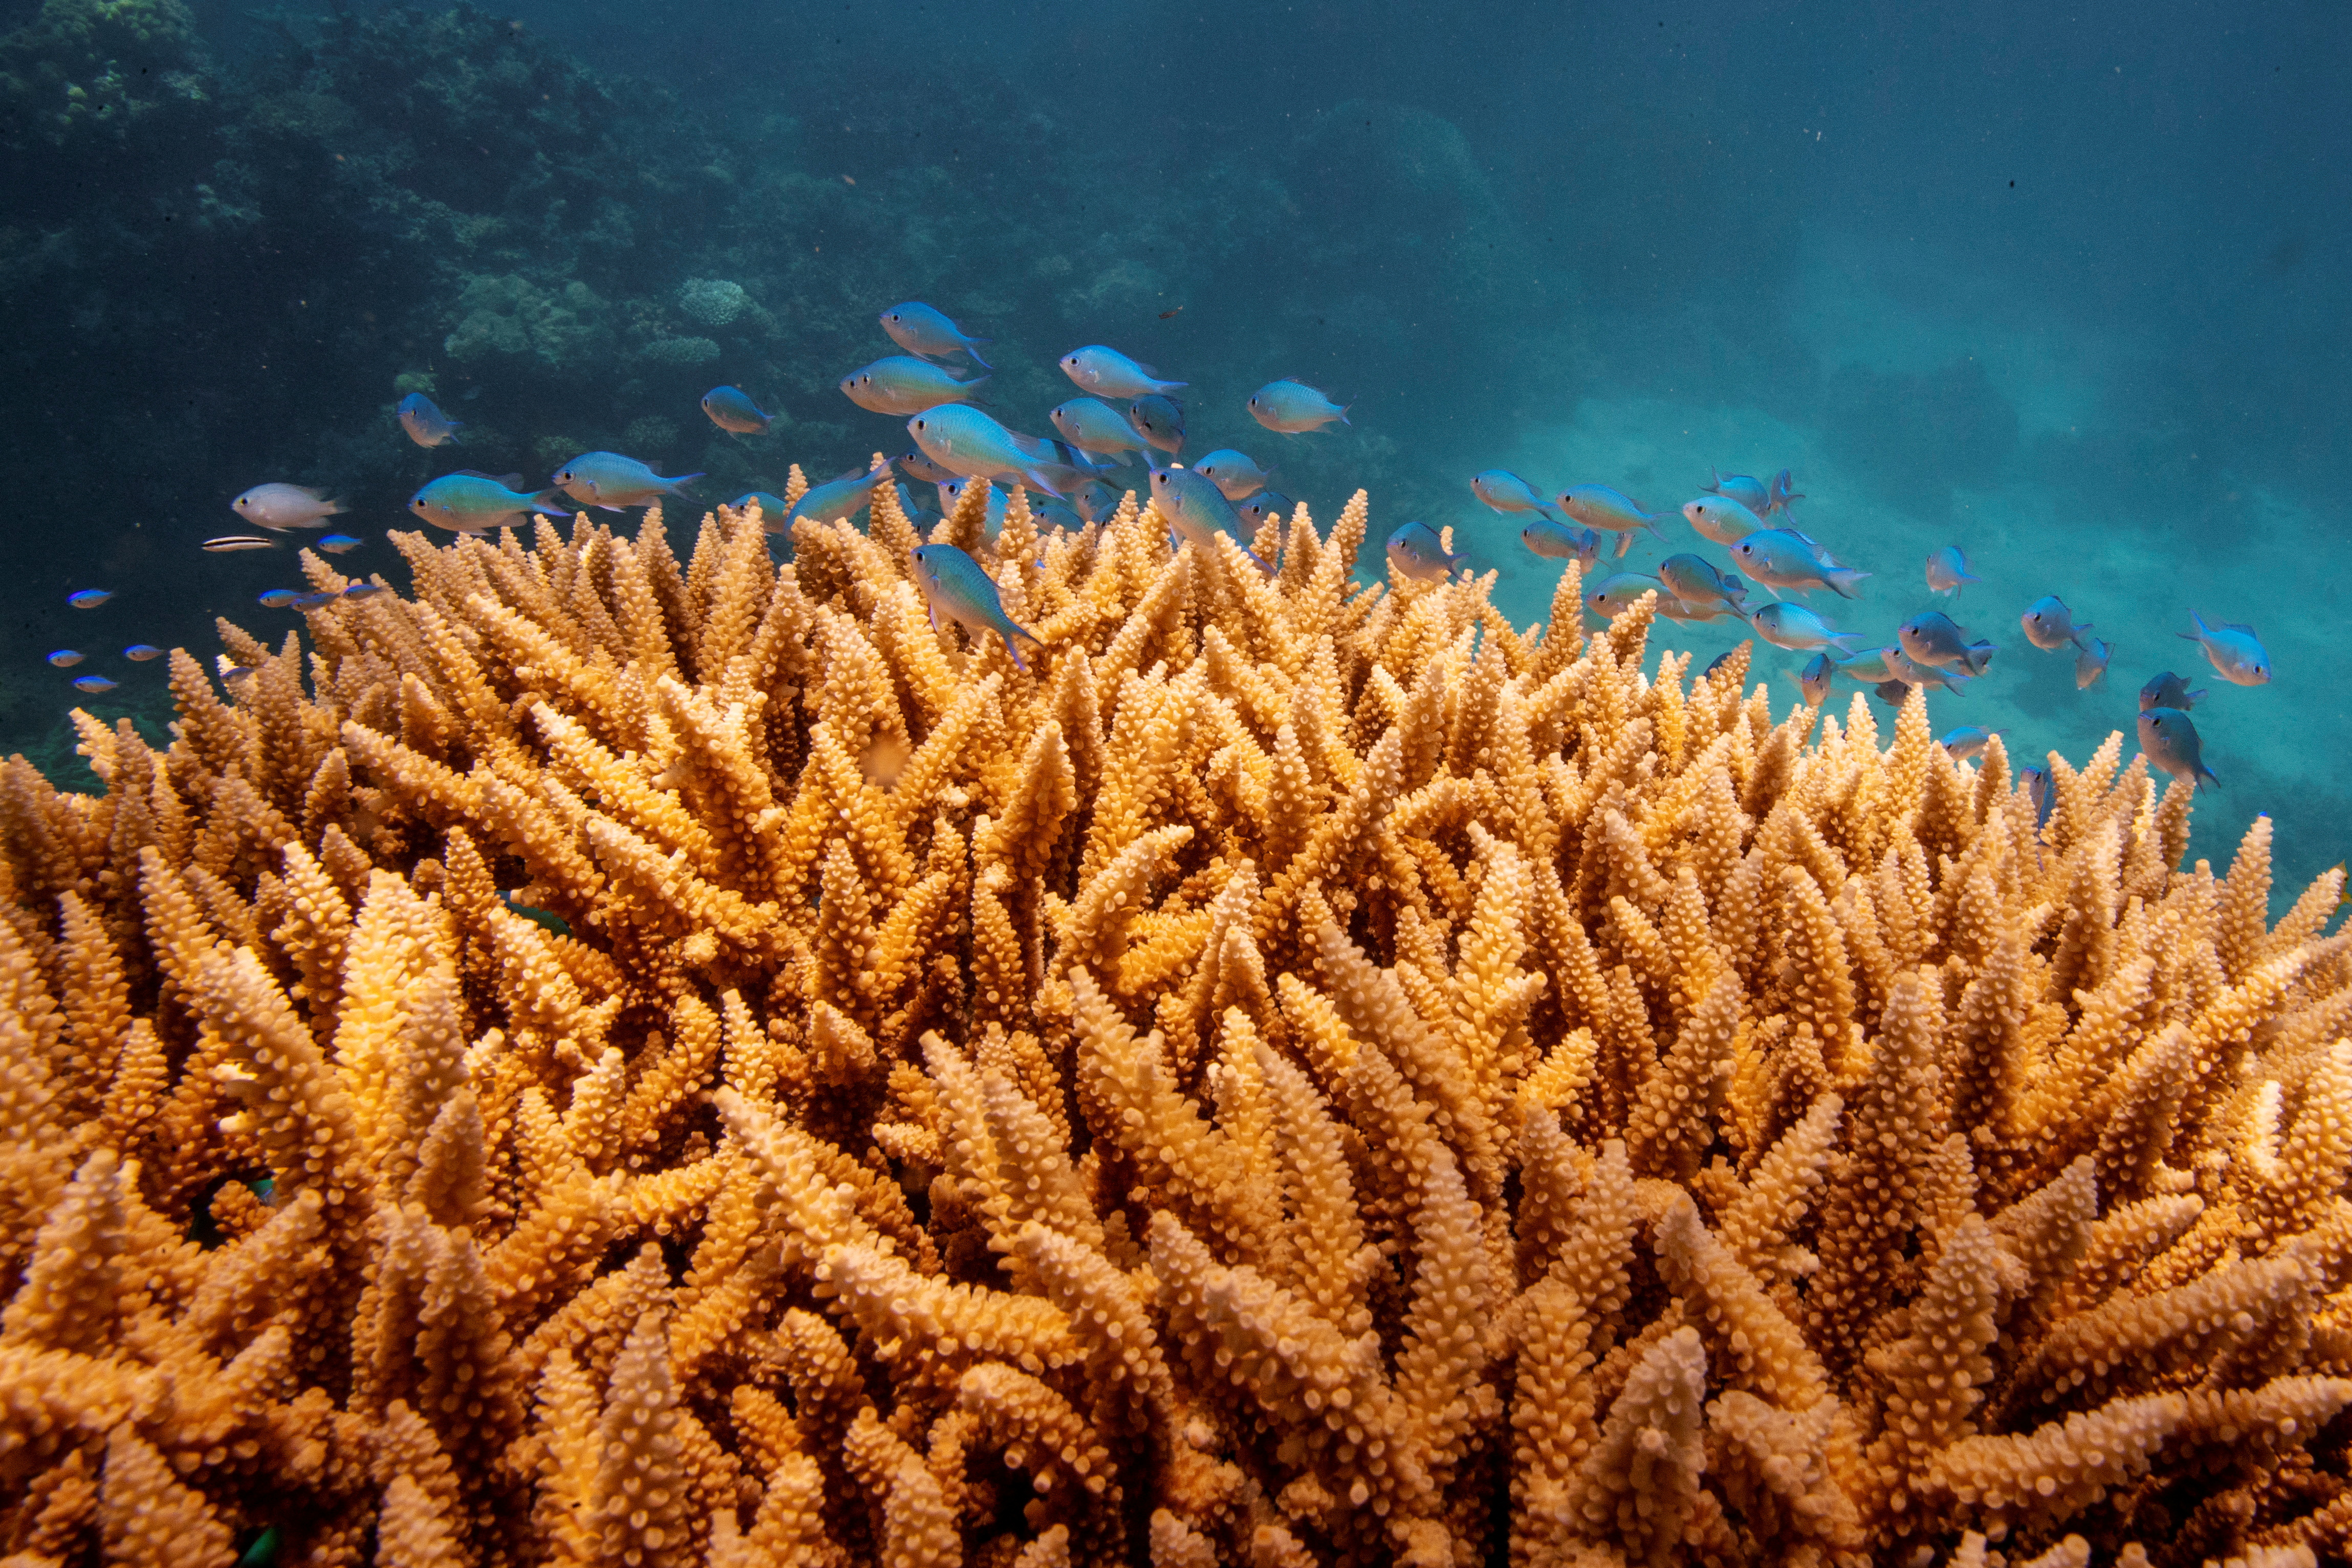 Si las temperaturas atmosféricas y oceánicas siguen aumentando al ritmo actual, los arrecifes de coral se enfrentarán a la extinción en los próximos 80 años o a finales de este siglo
REUTERS/Lucas Jackson/File Photo